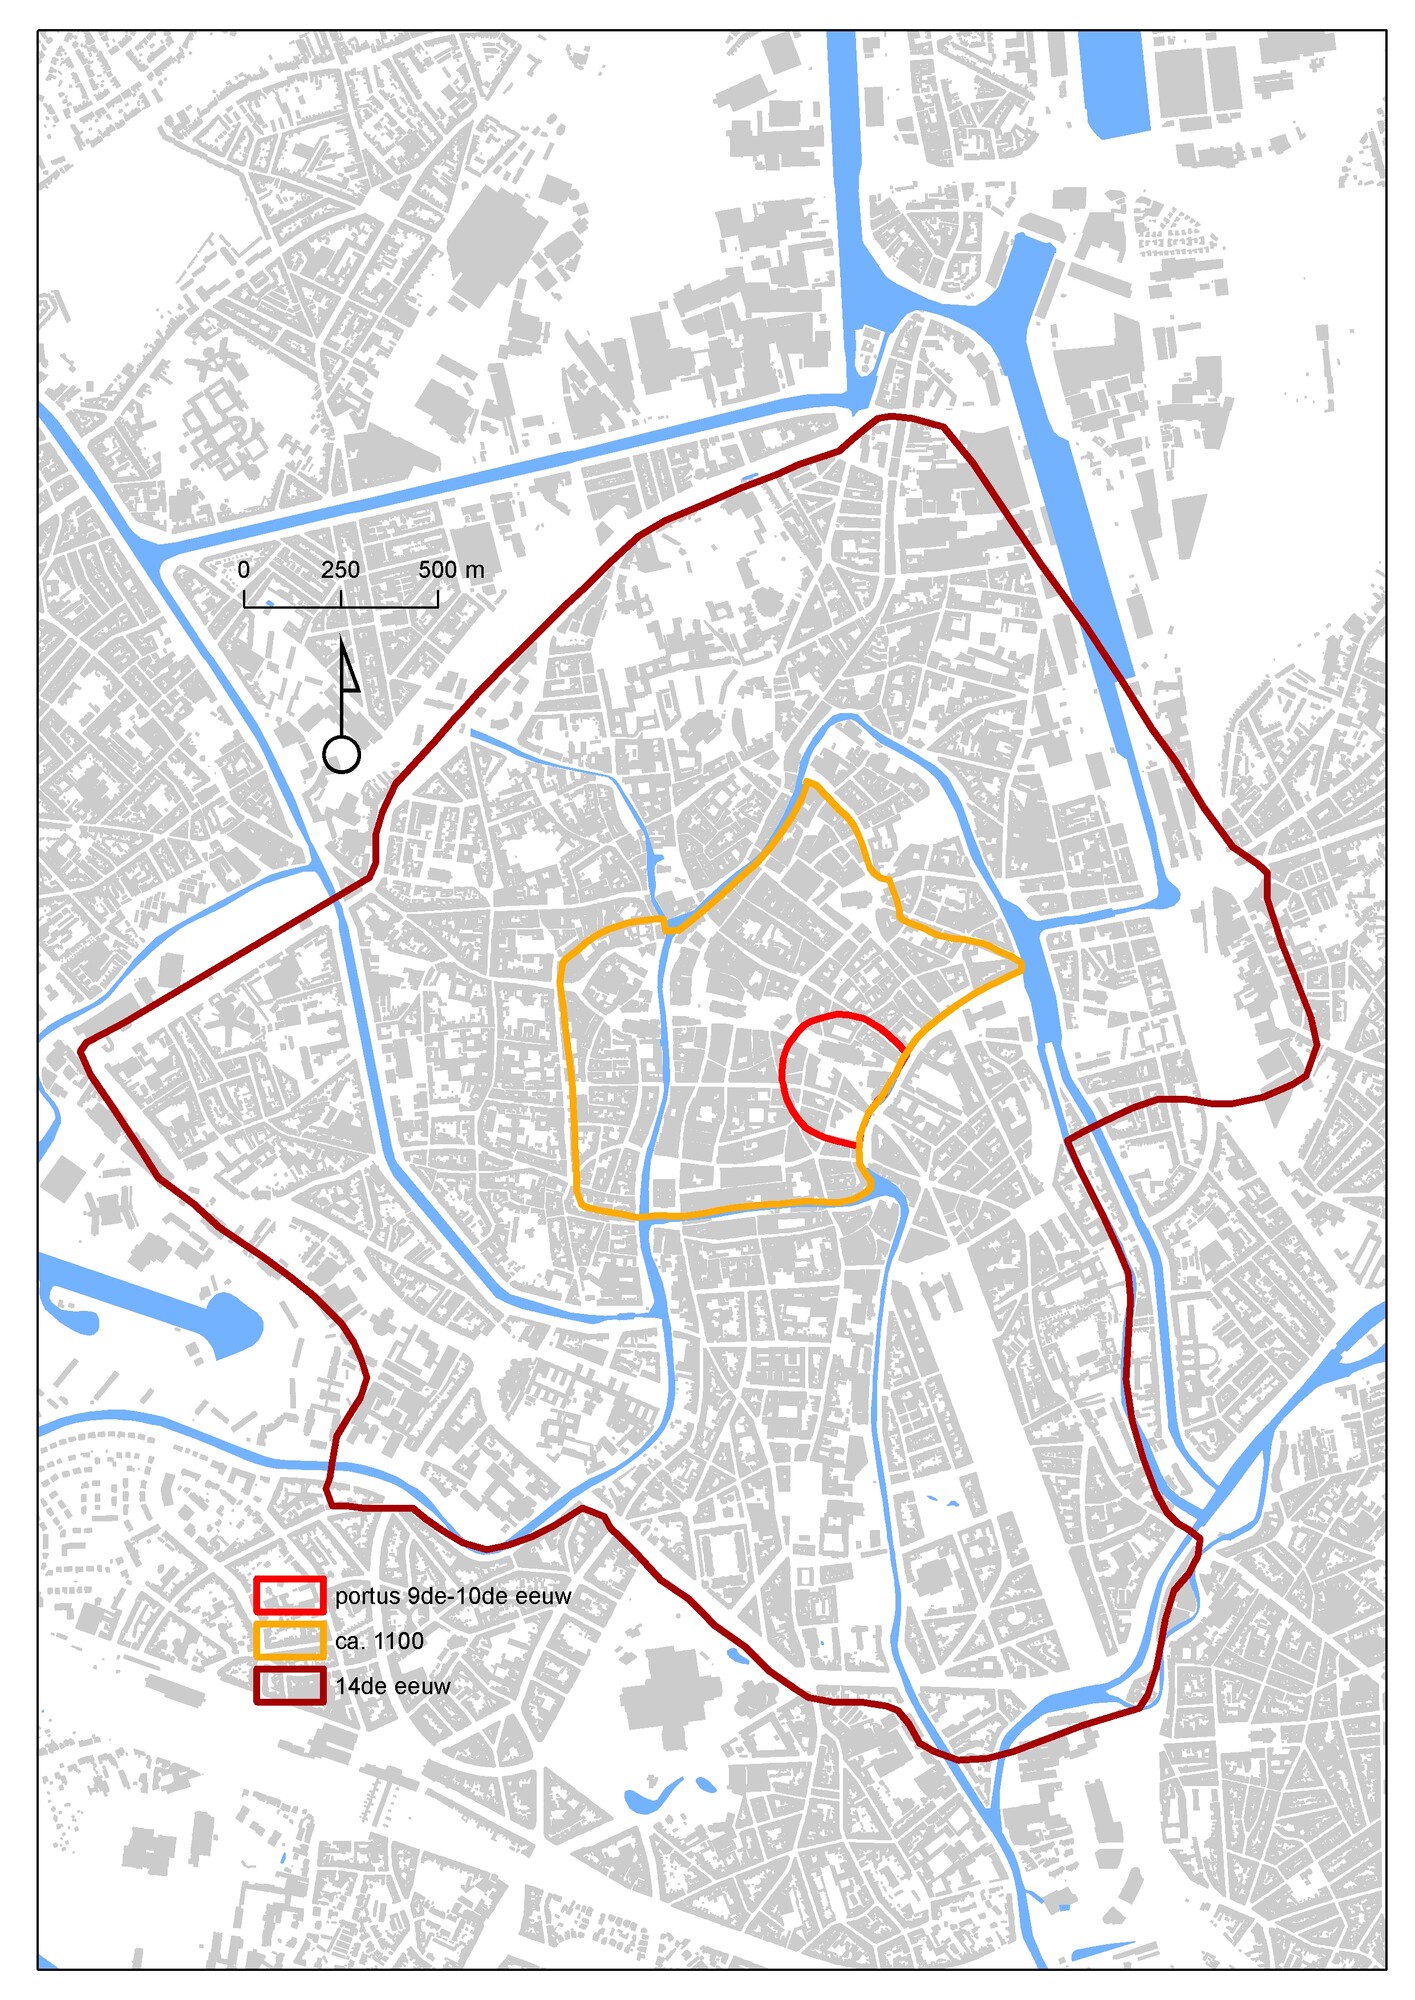 Grondplan van Gent